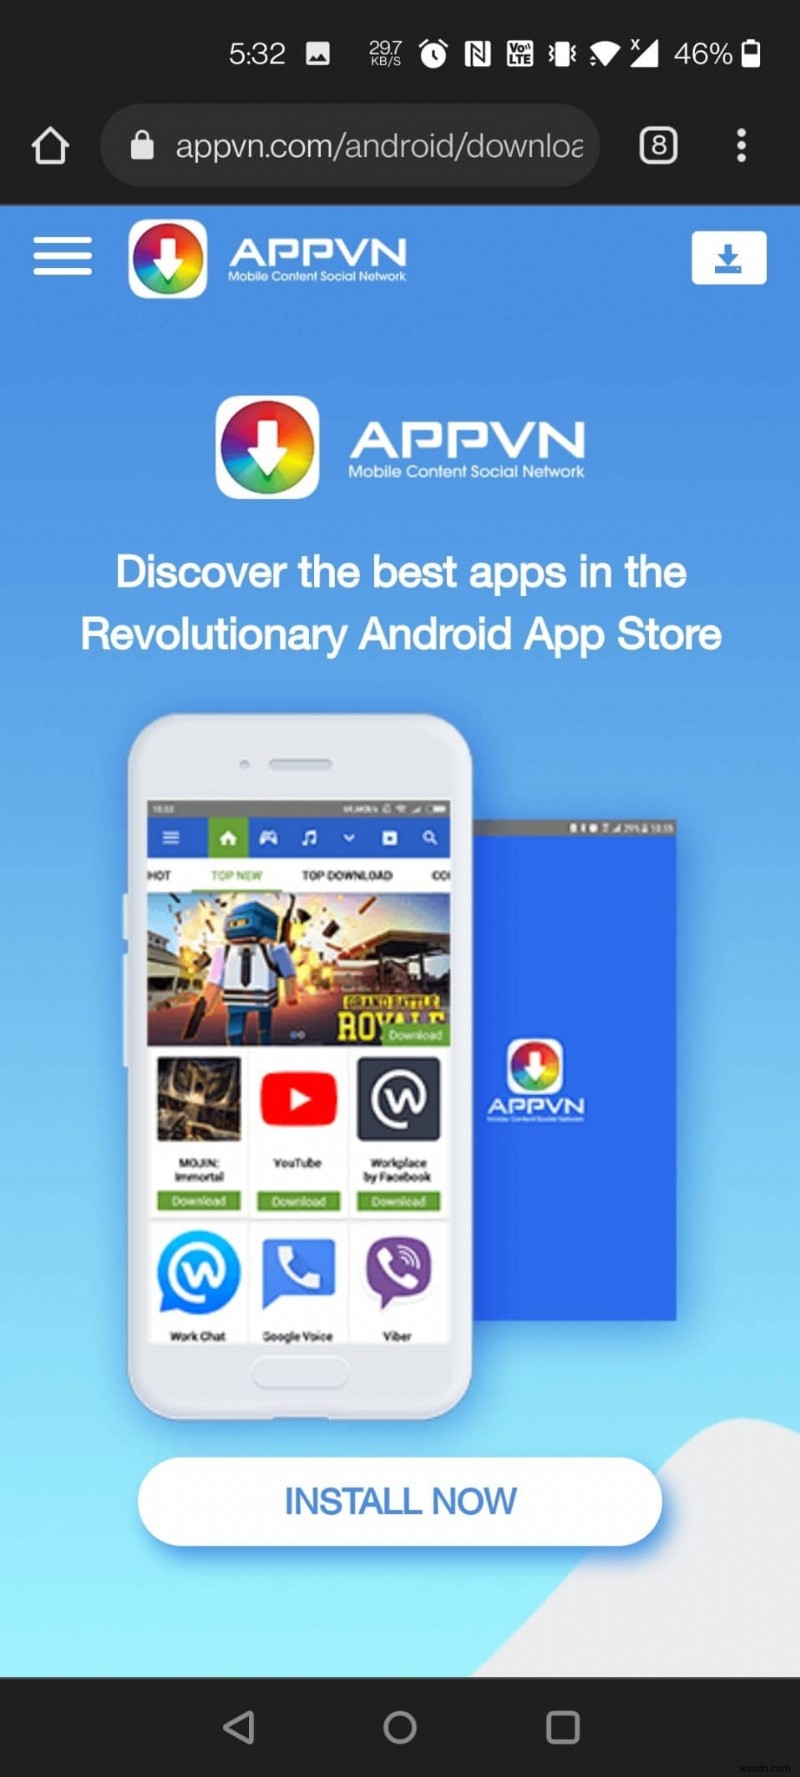 무료로 유료 앱을 다운로드할 수 있는 최고의 Android 앱 14개